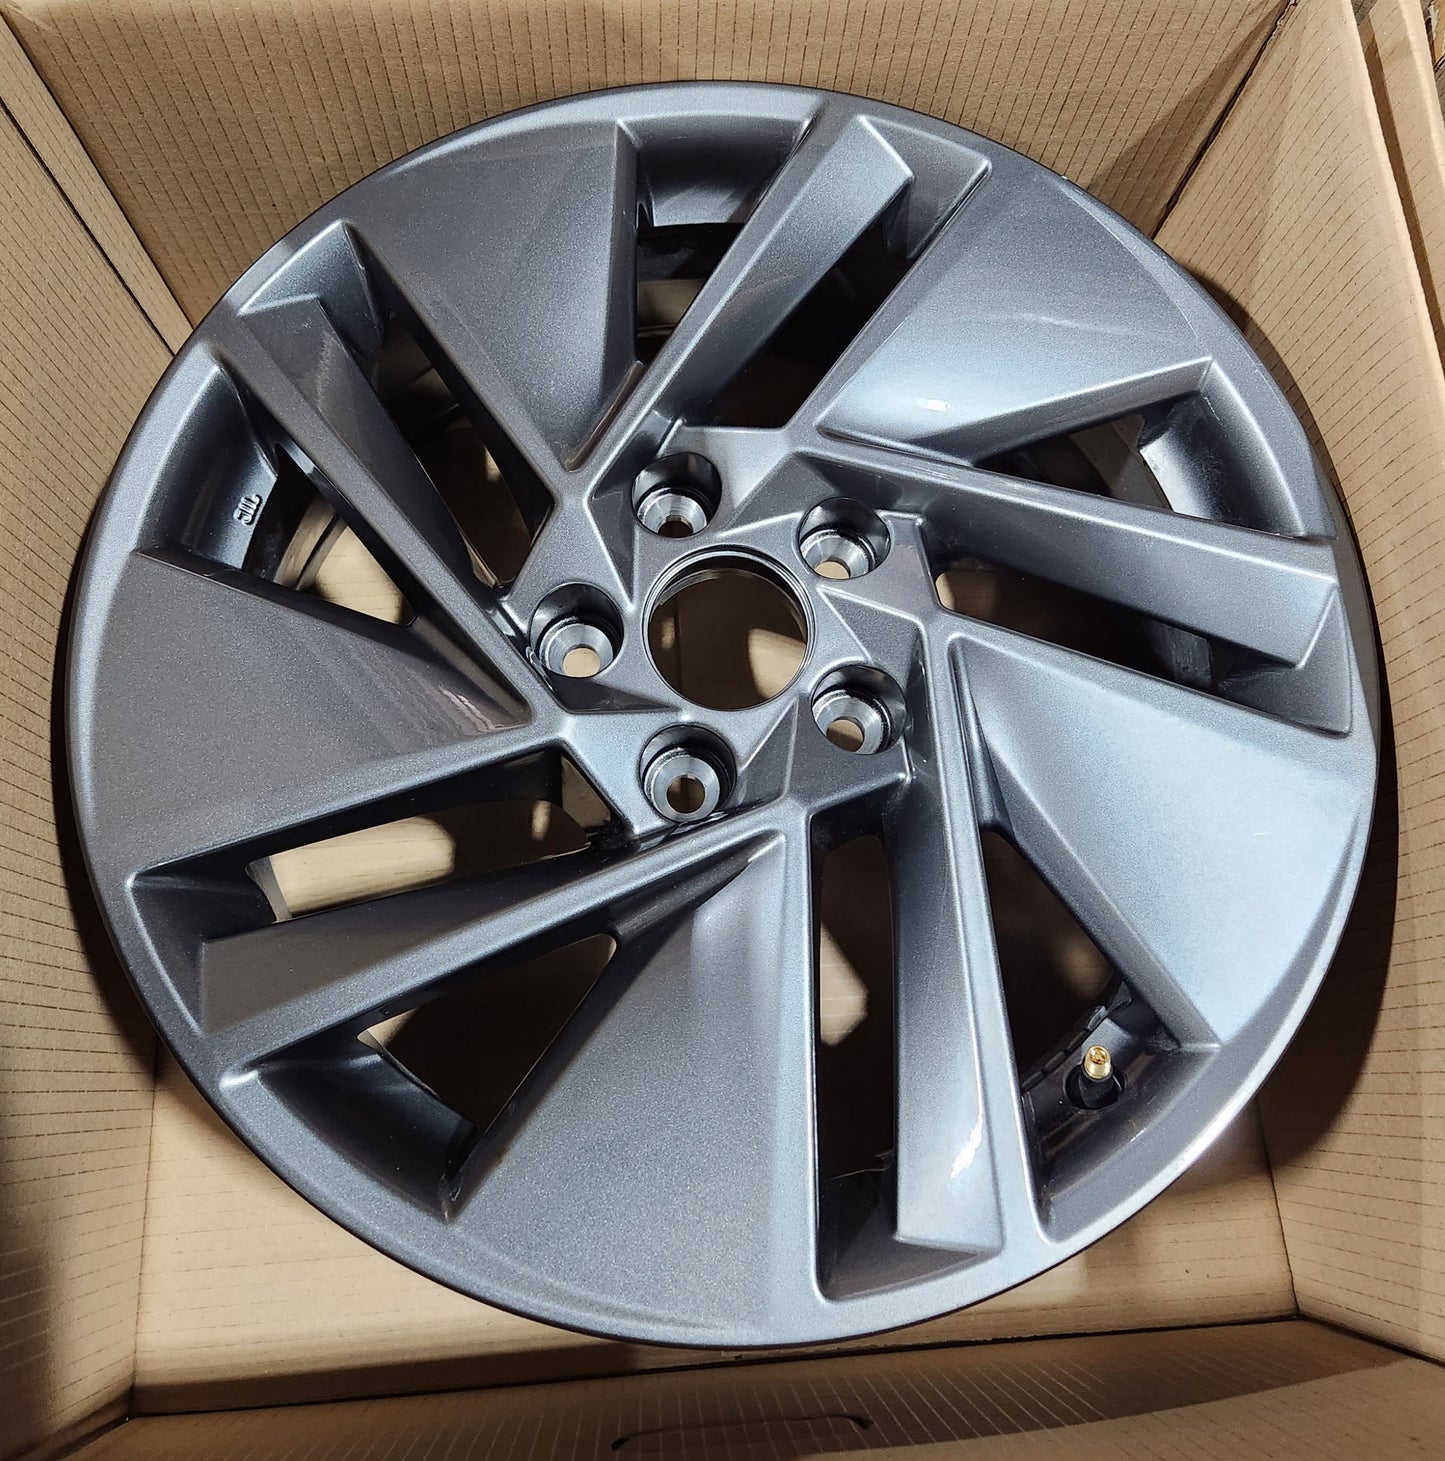 Nissan Qashqai 17" Grey Alloy Wheels Set of 4 7J 40 offset D03006UA2A